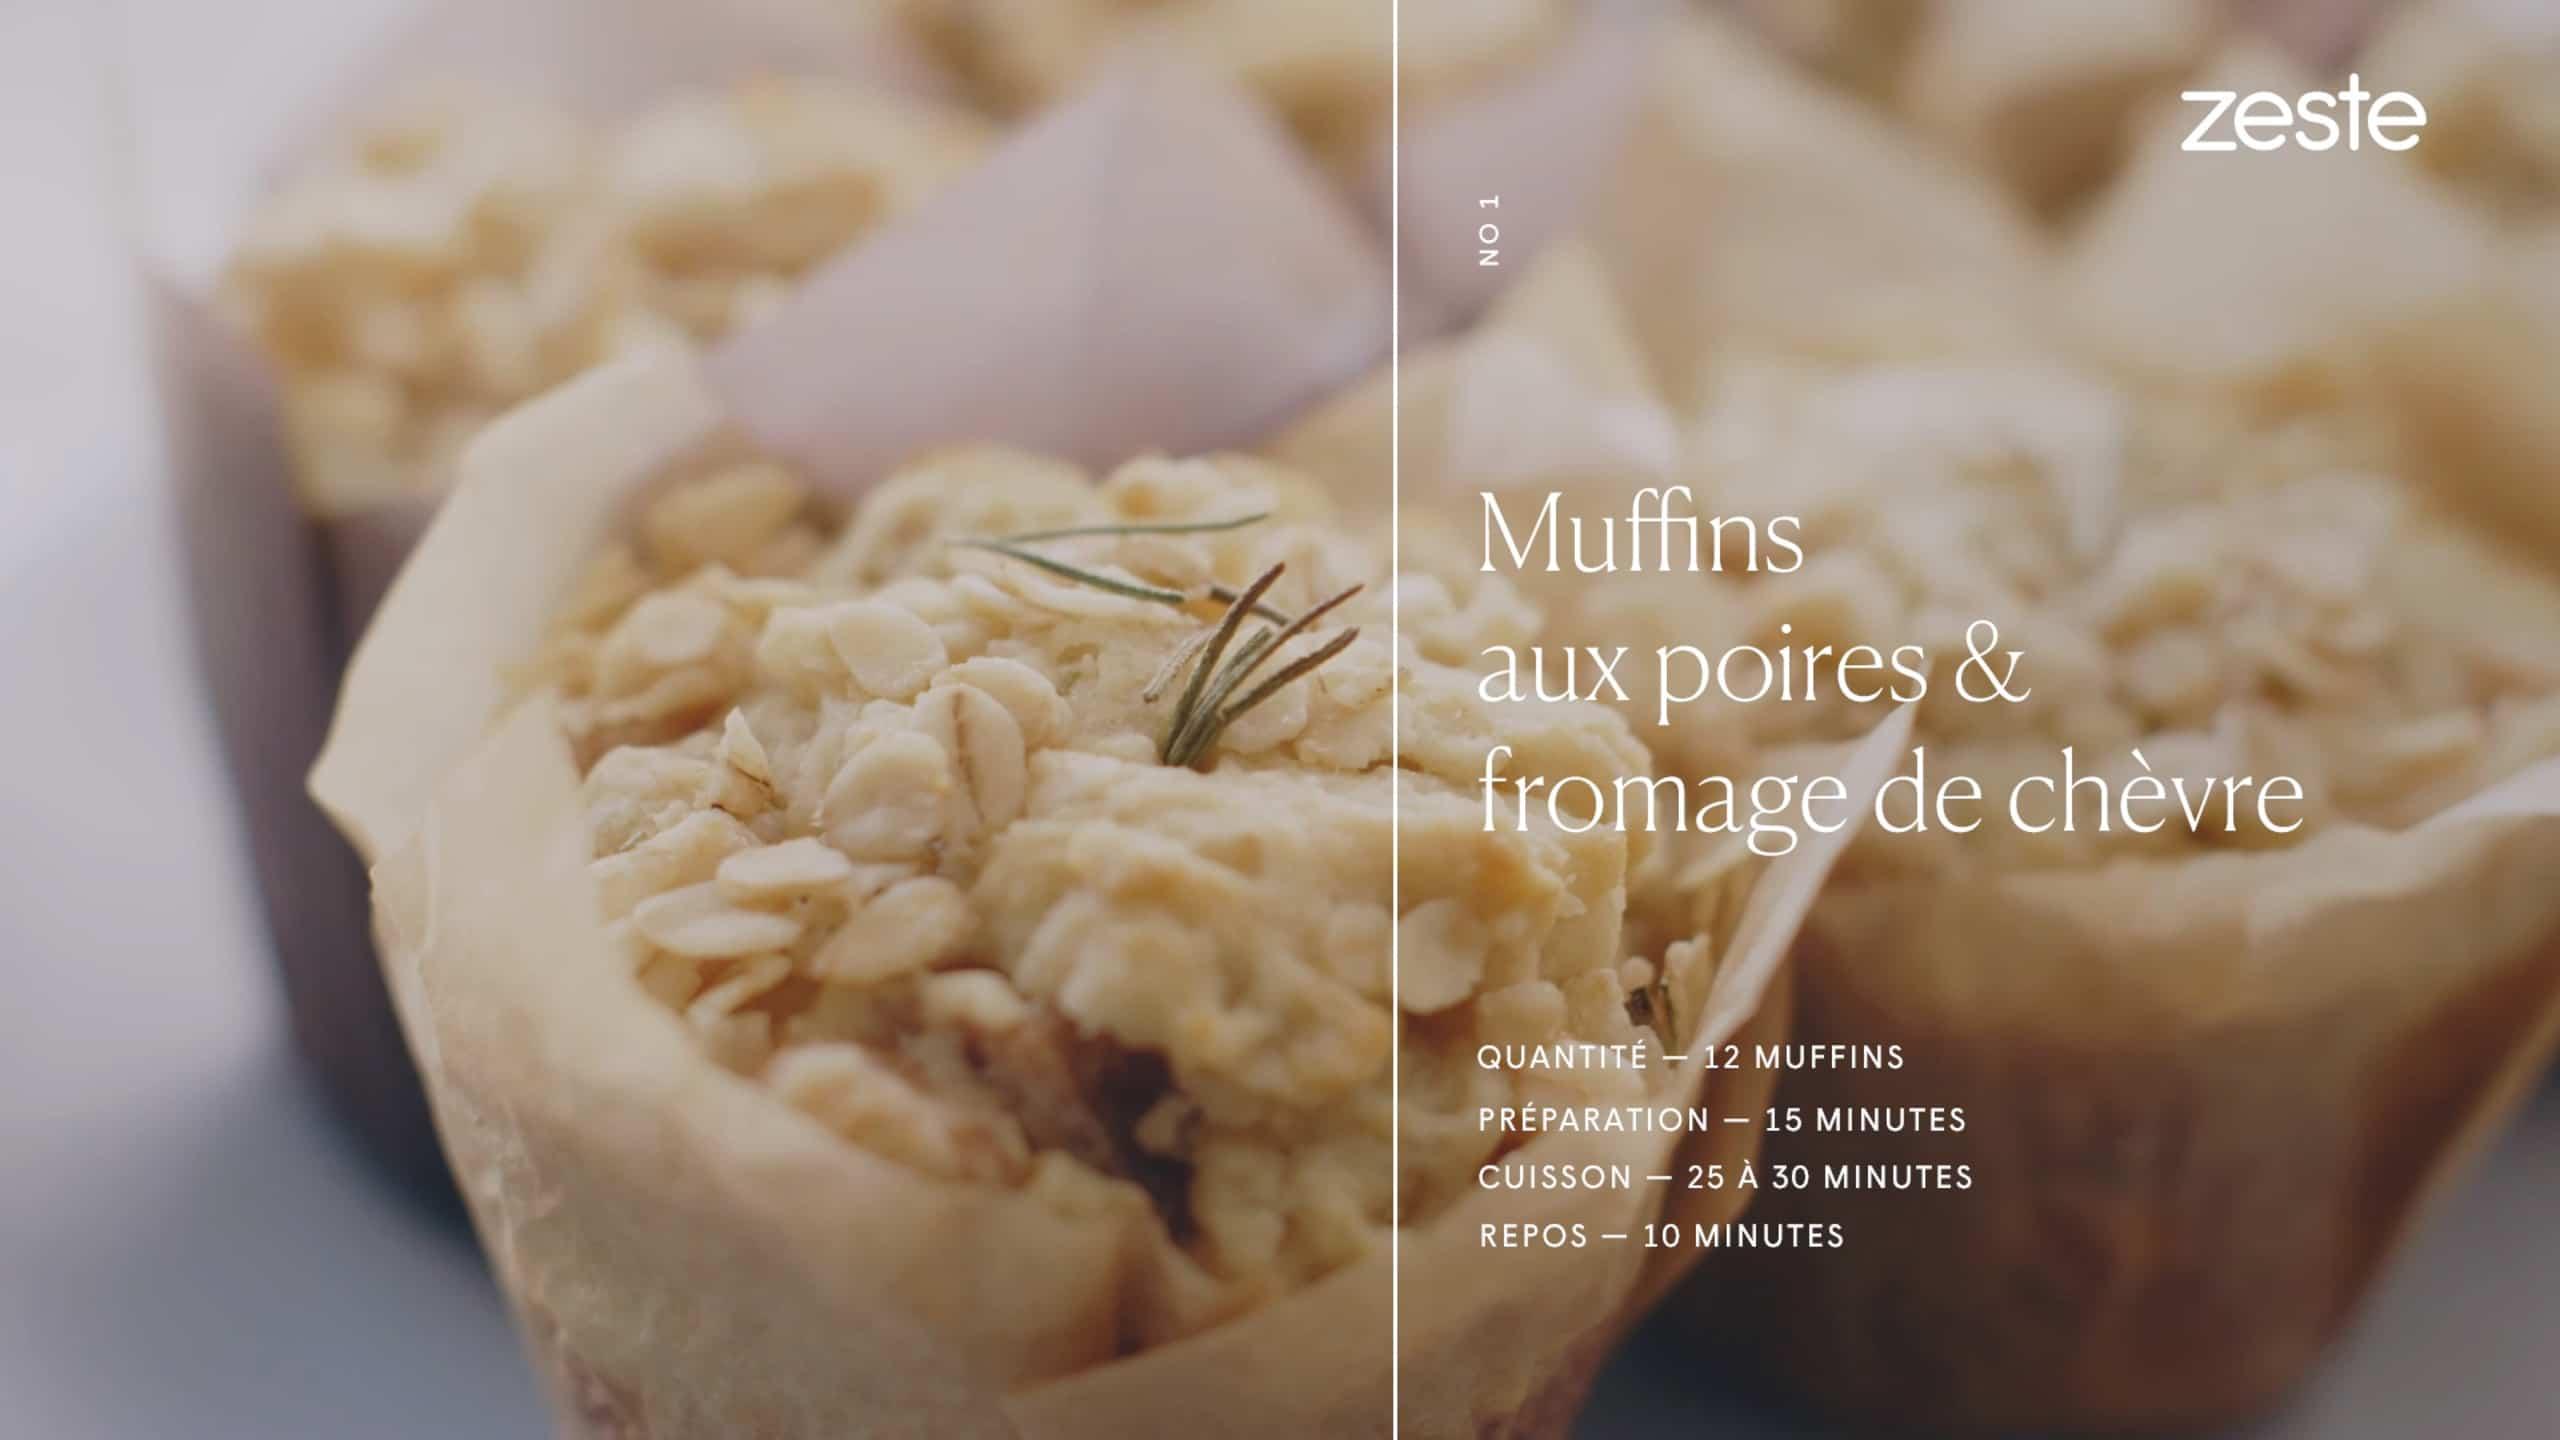 Muffins aux poires & fromage de chèvre 